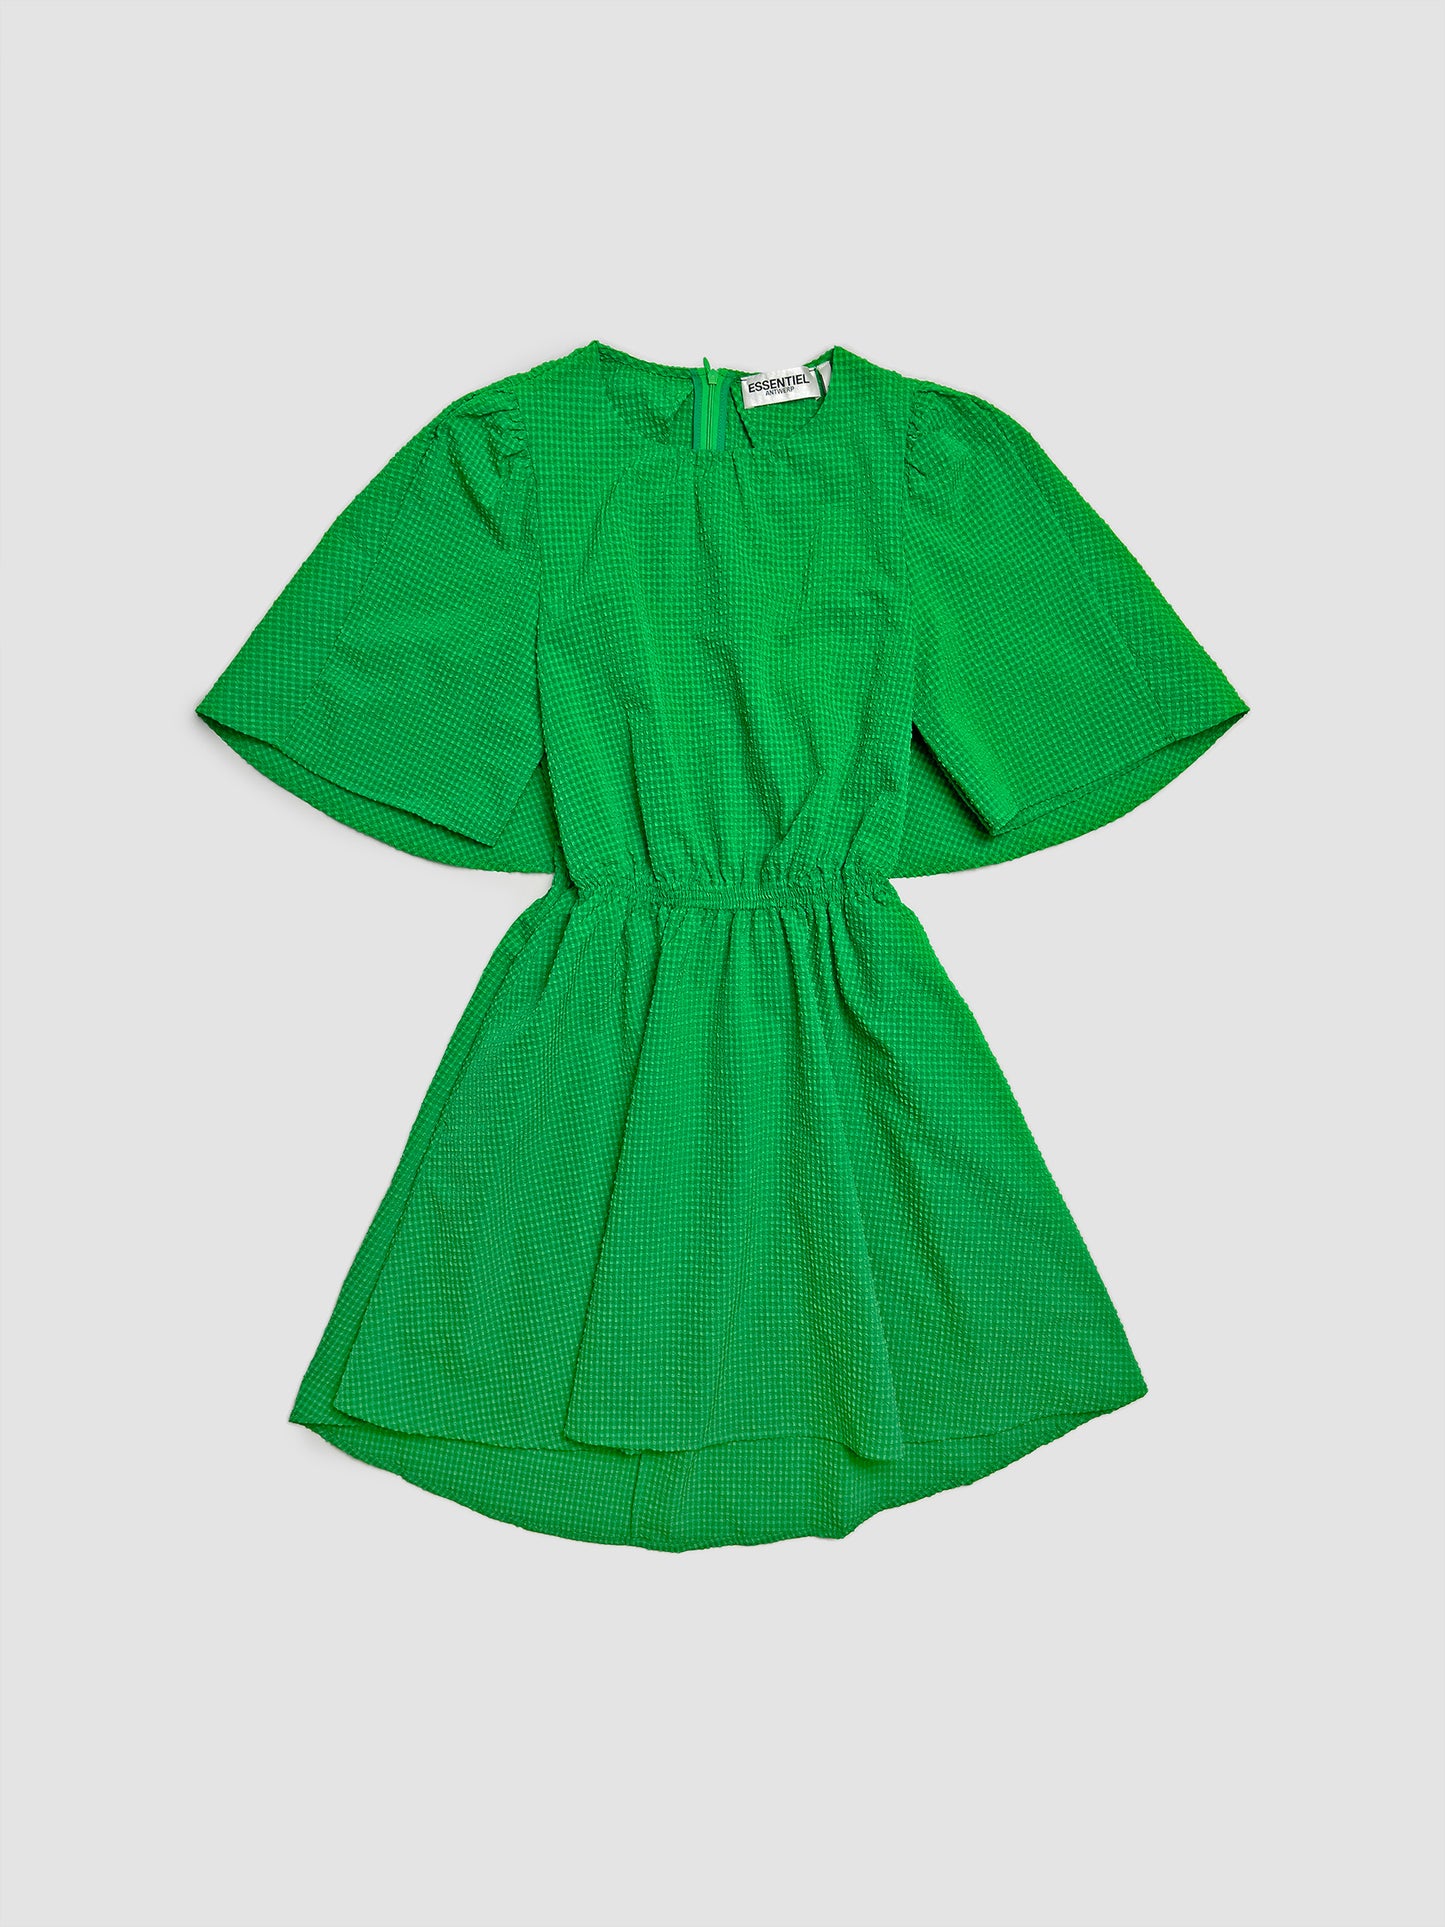 Dottie Green Mini Dress